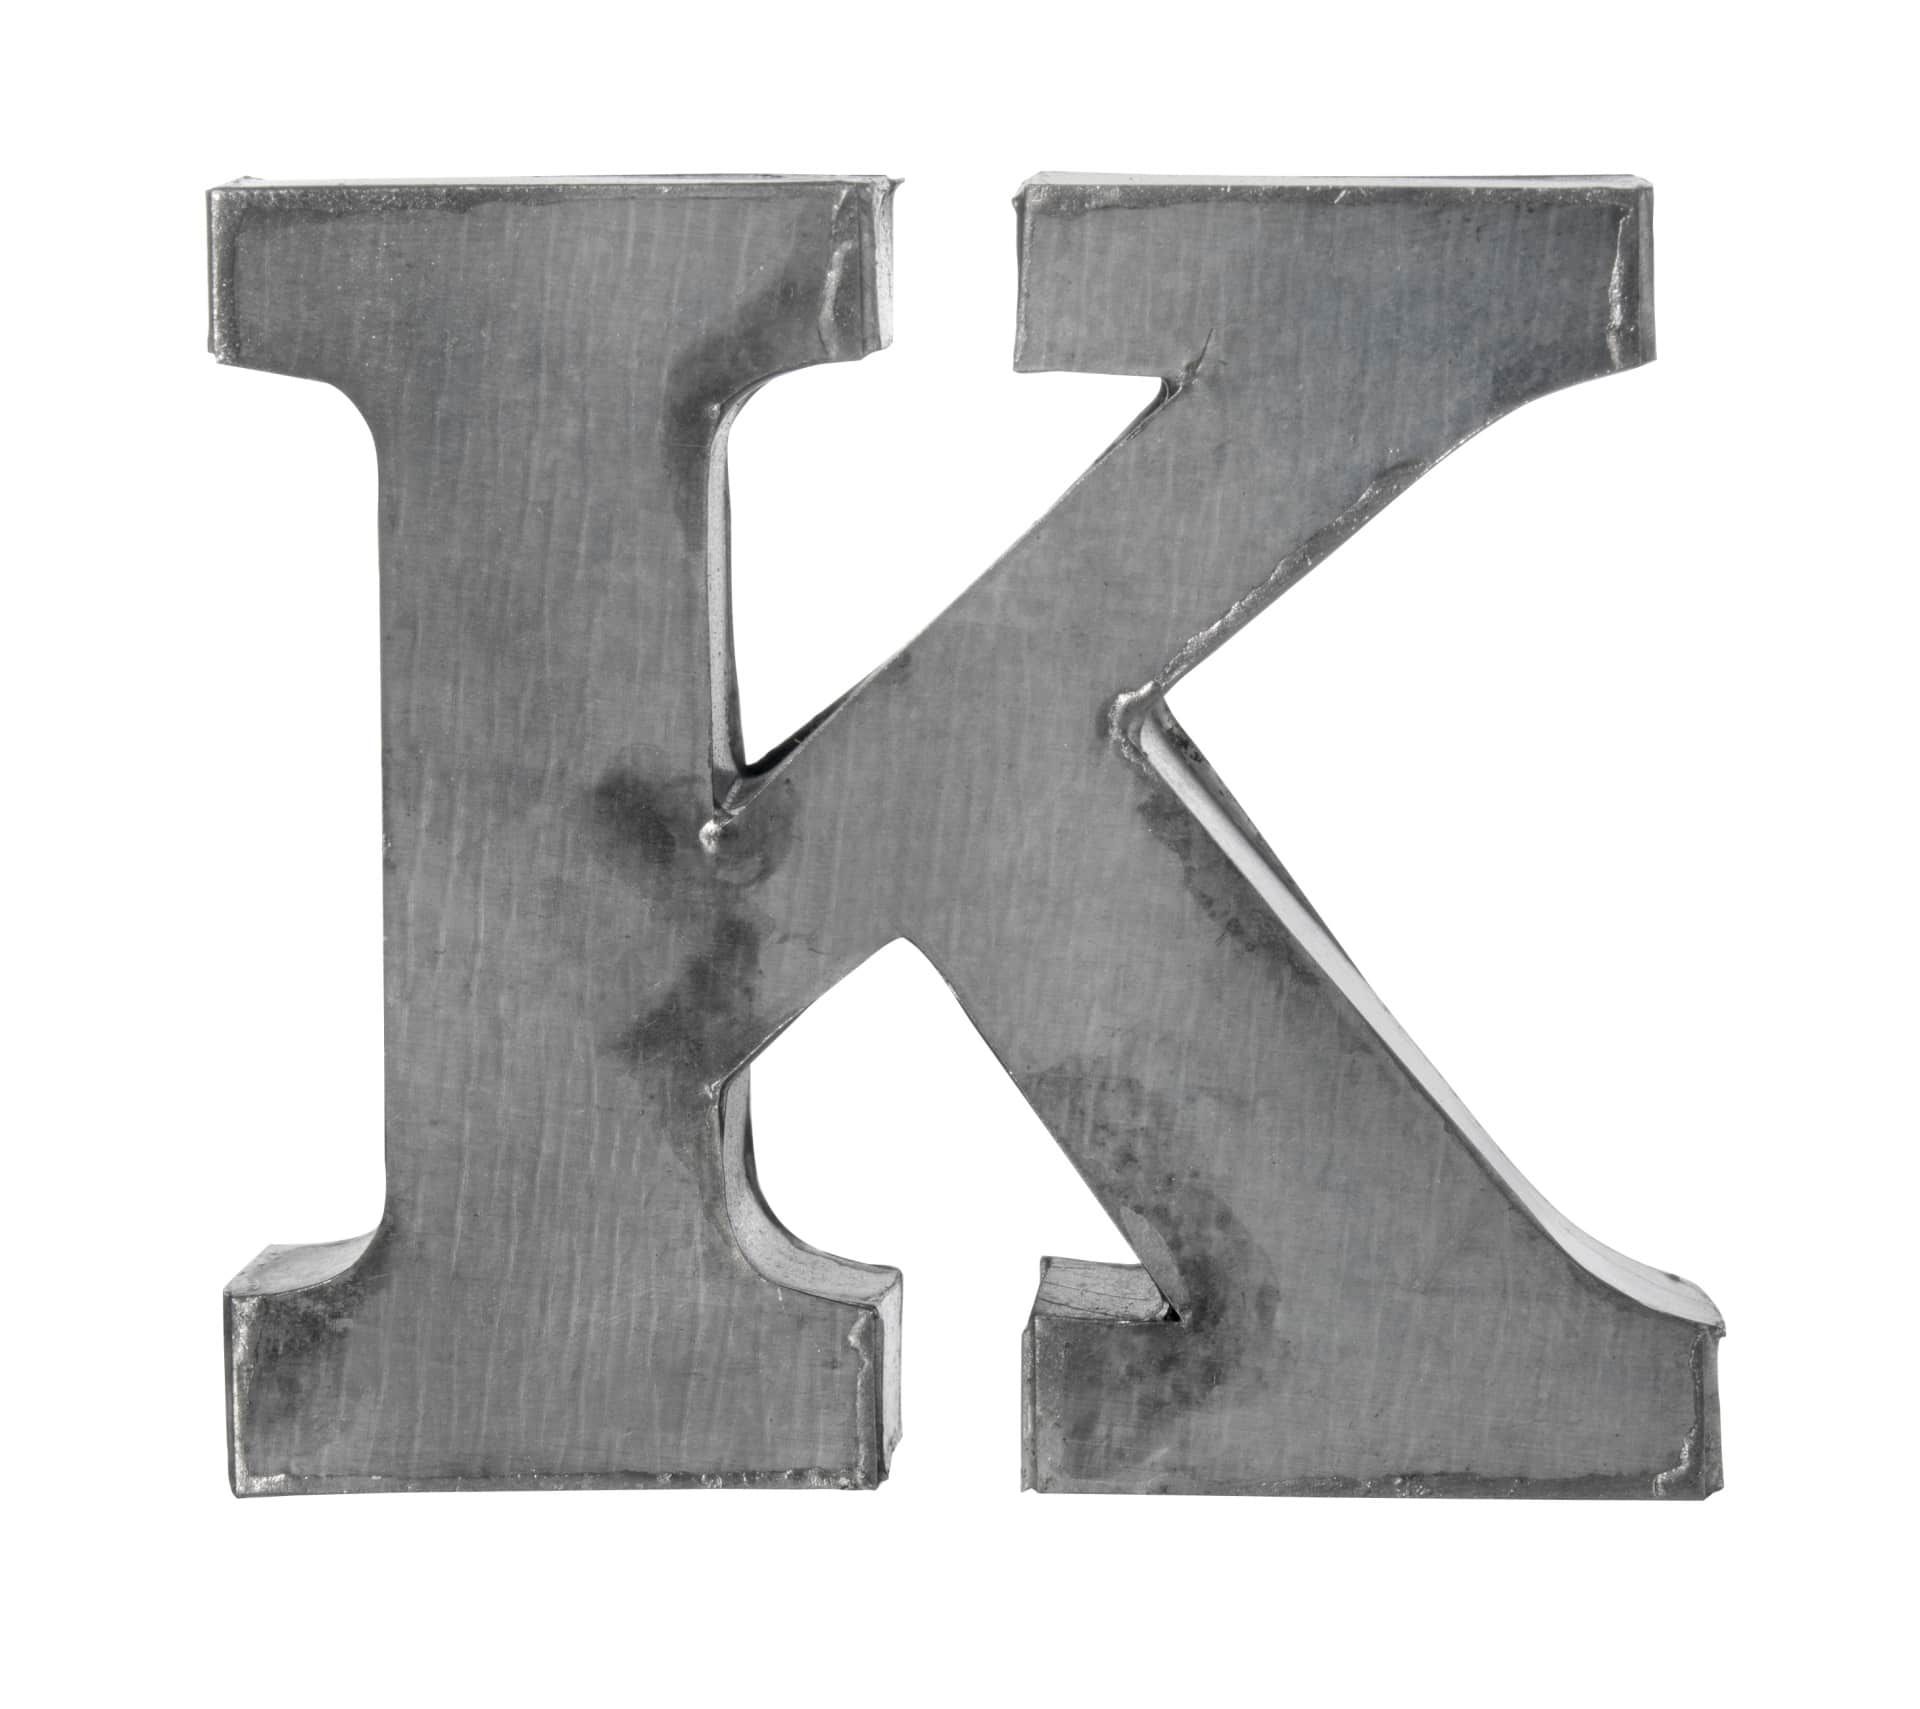 MADAM STOLTZ Plechové písmeno K, 5,5 cm